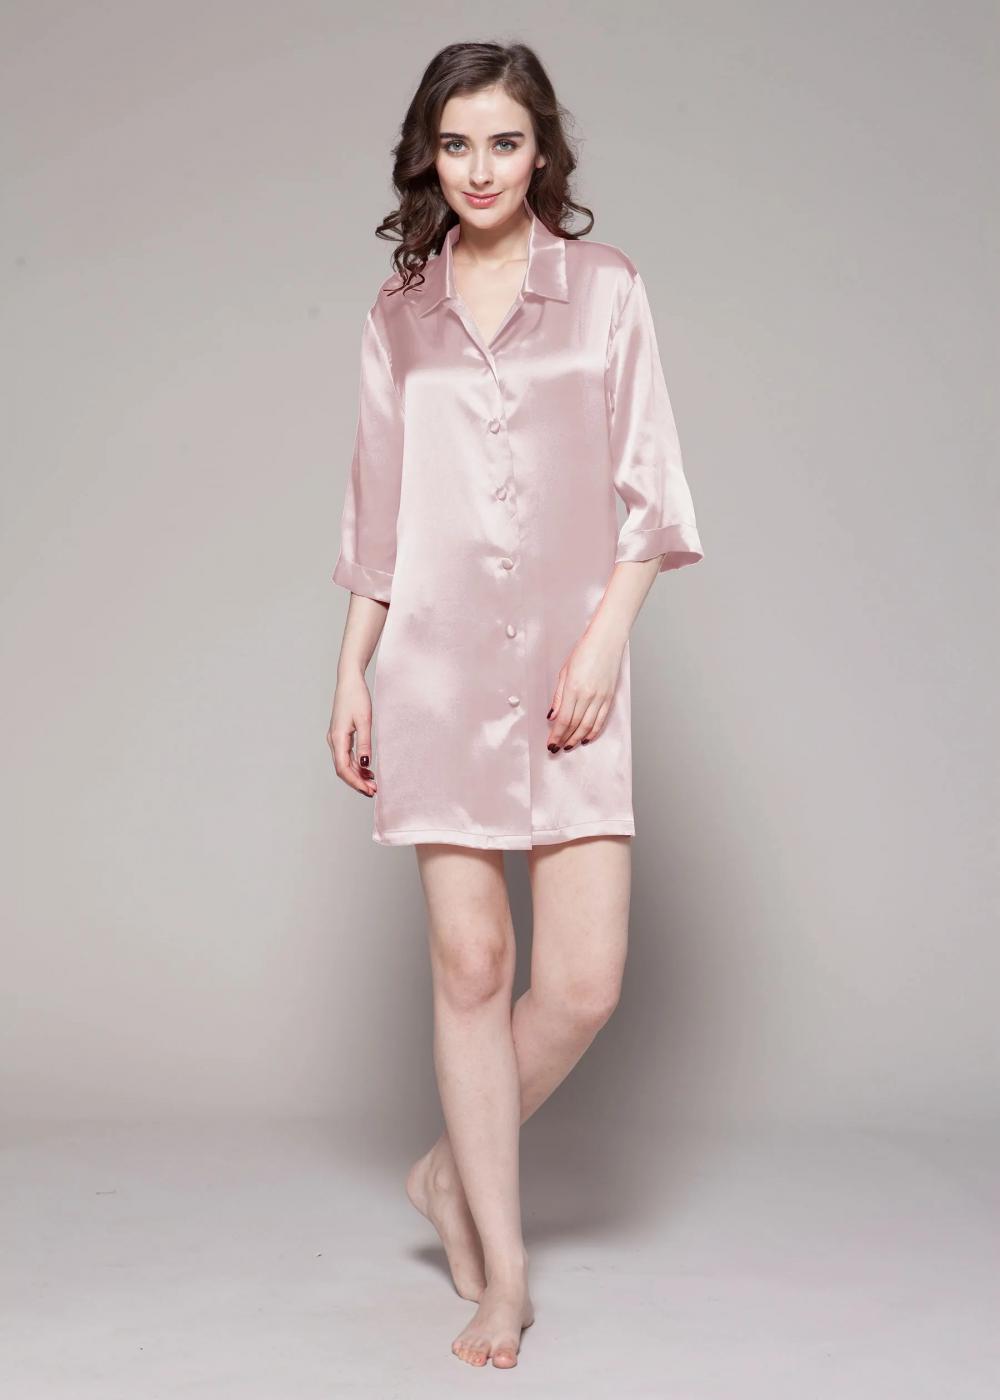 19 Momme Classic Silk Nightshirt Women's Nightgown Button Down Sleepshirt Boyfriend Notch Collar Sleepwear